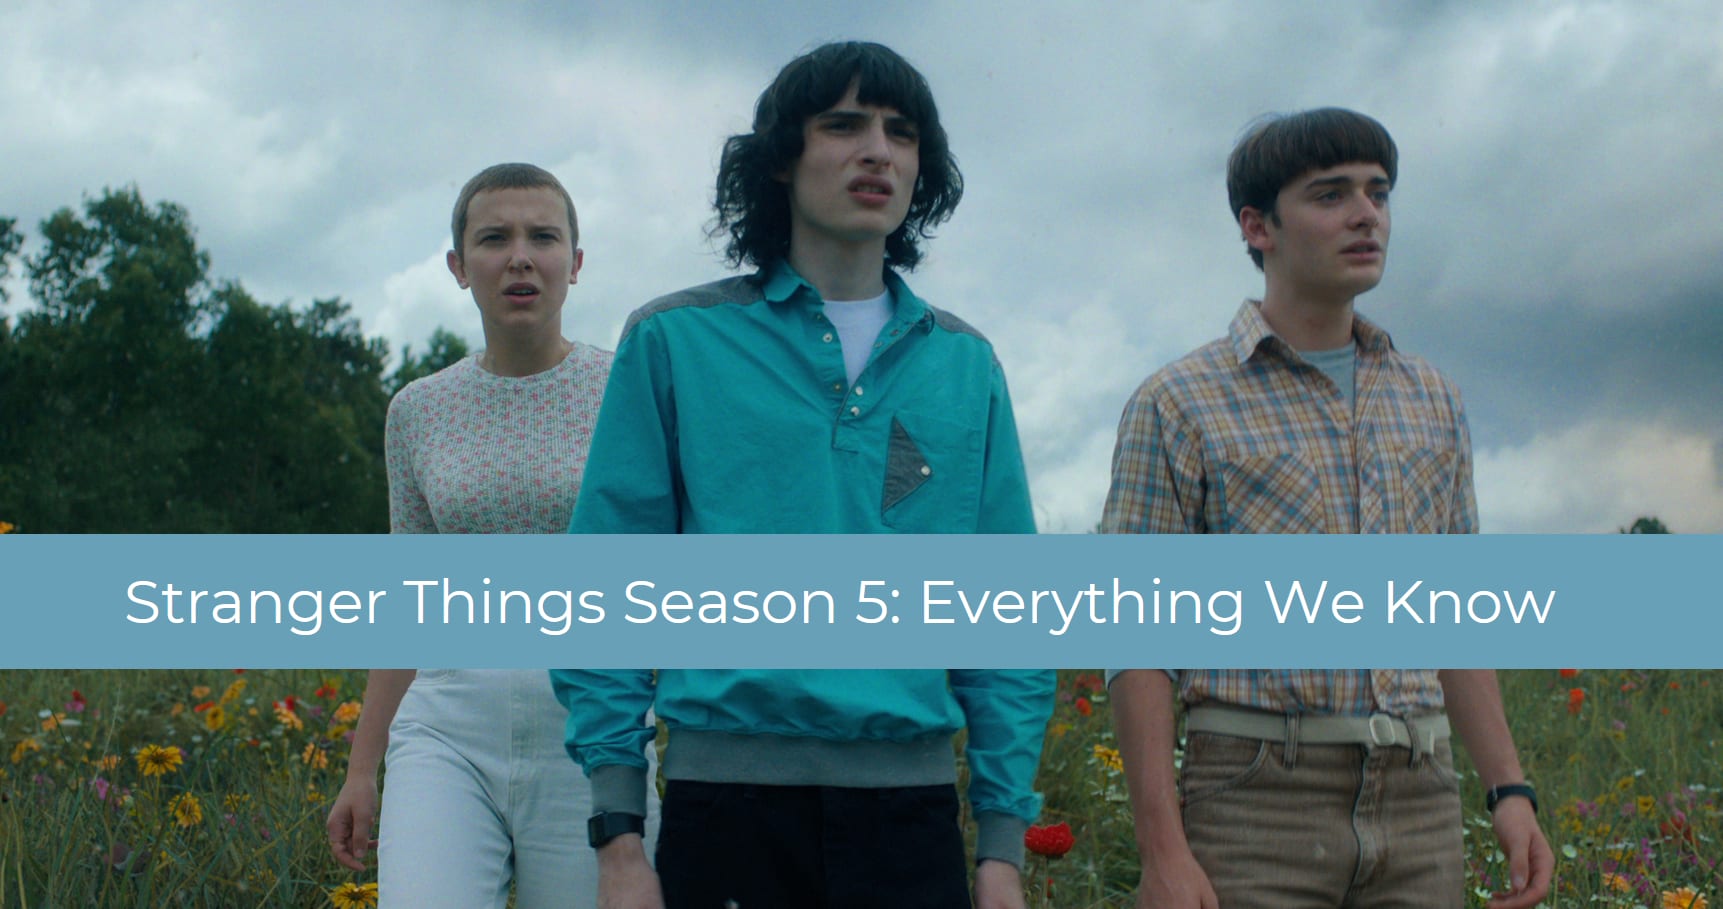 Stranger Things Season 5: Cast, Plot, and More